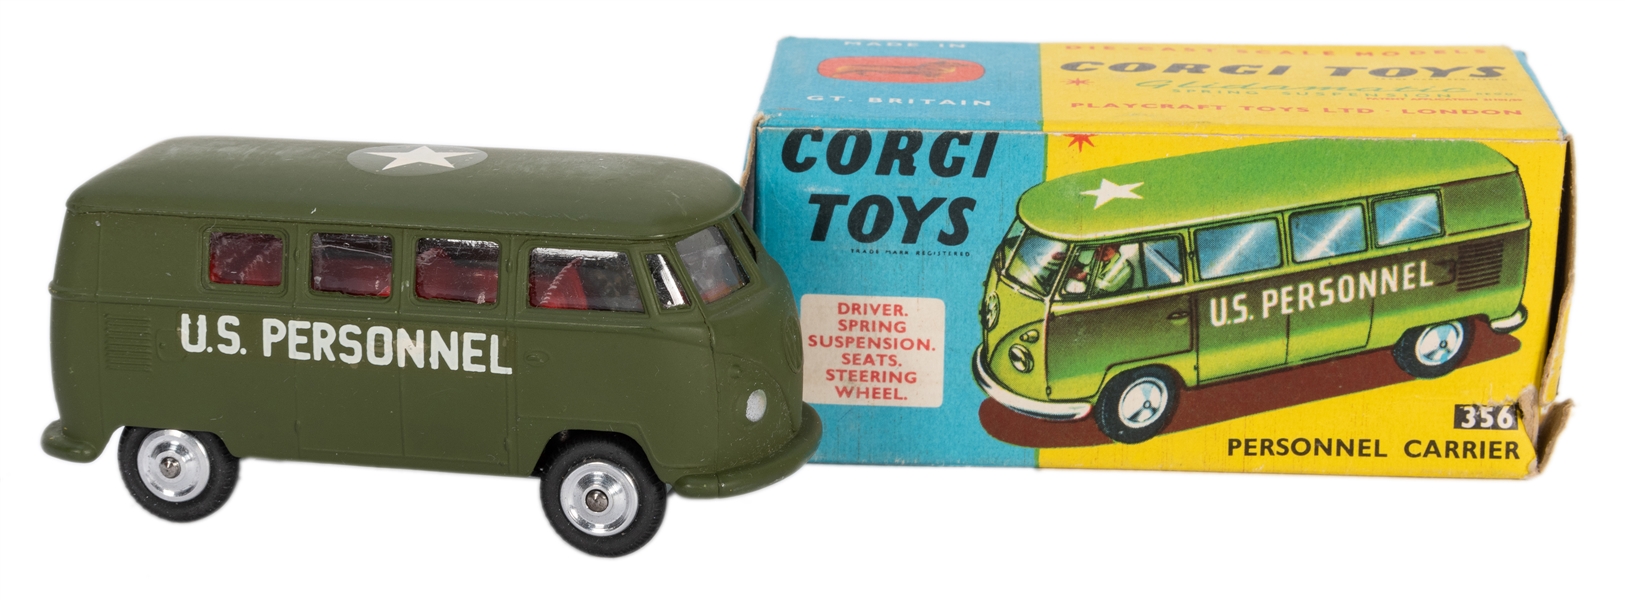  Corgi VW Mini-Van Personnel Carrier #356 in Original Box. 1964.